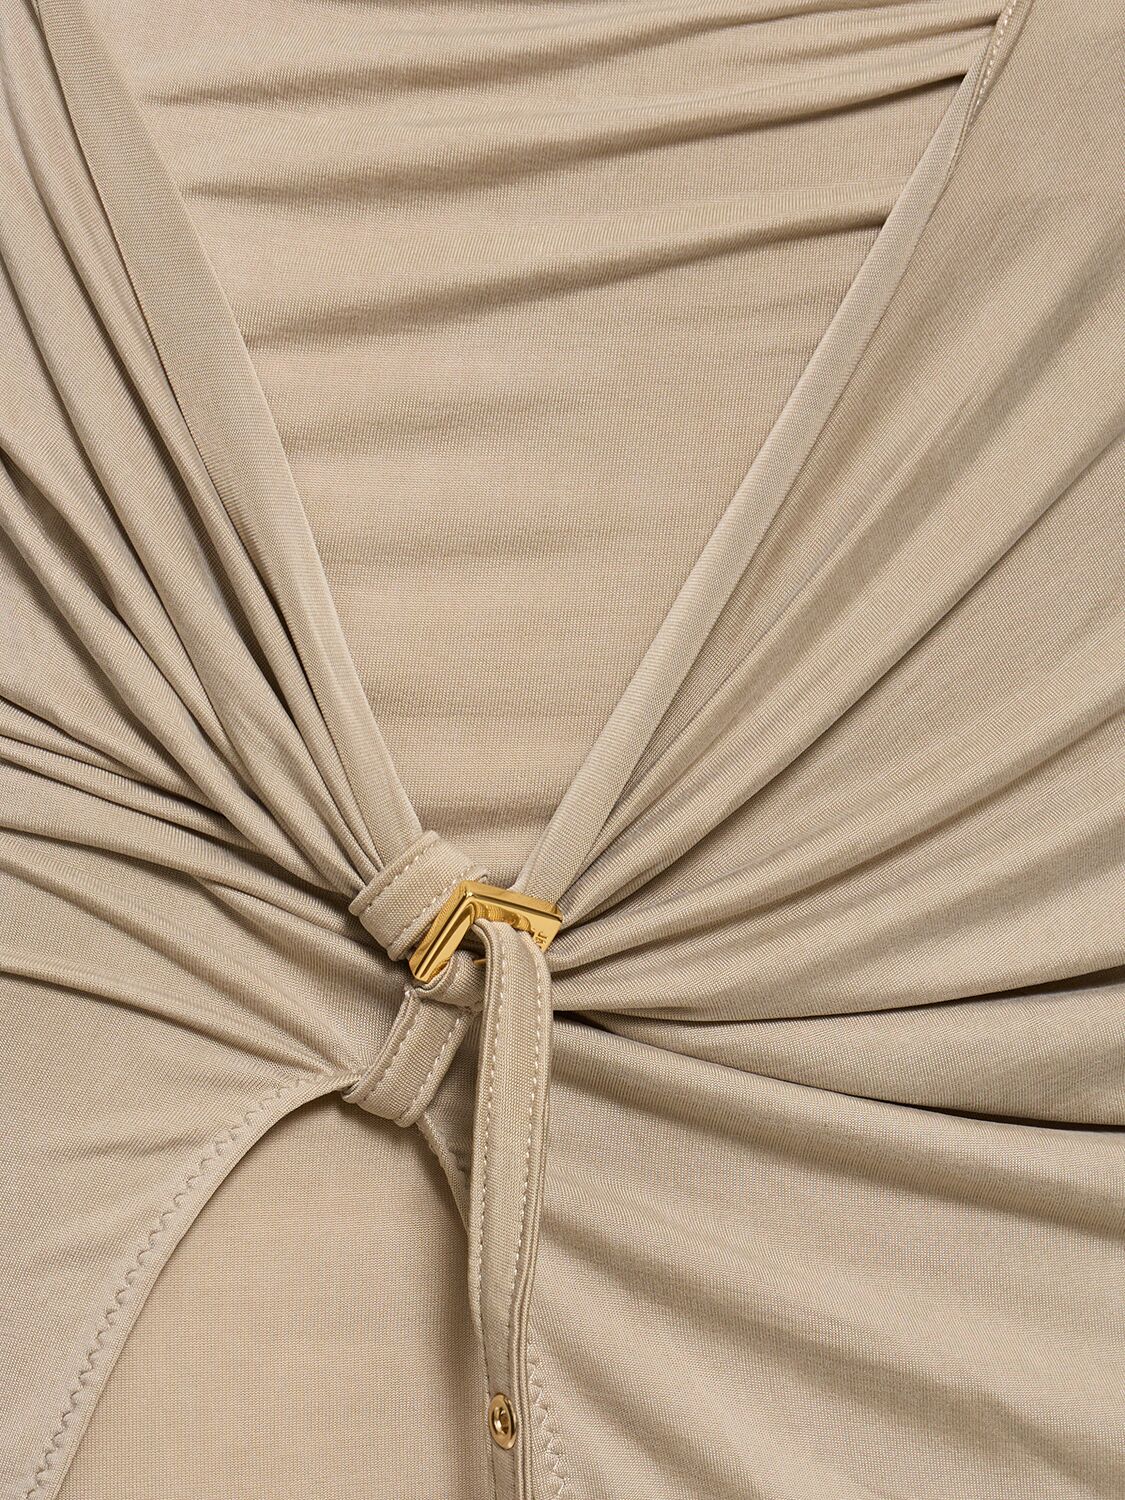 LA JUPE PAREO CROISSANT铜氨纤维围裹式半身裙